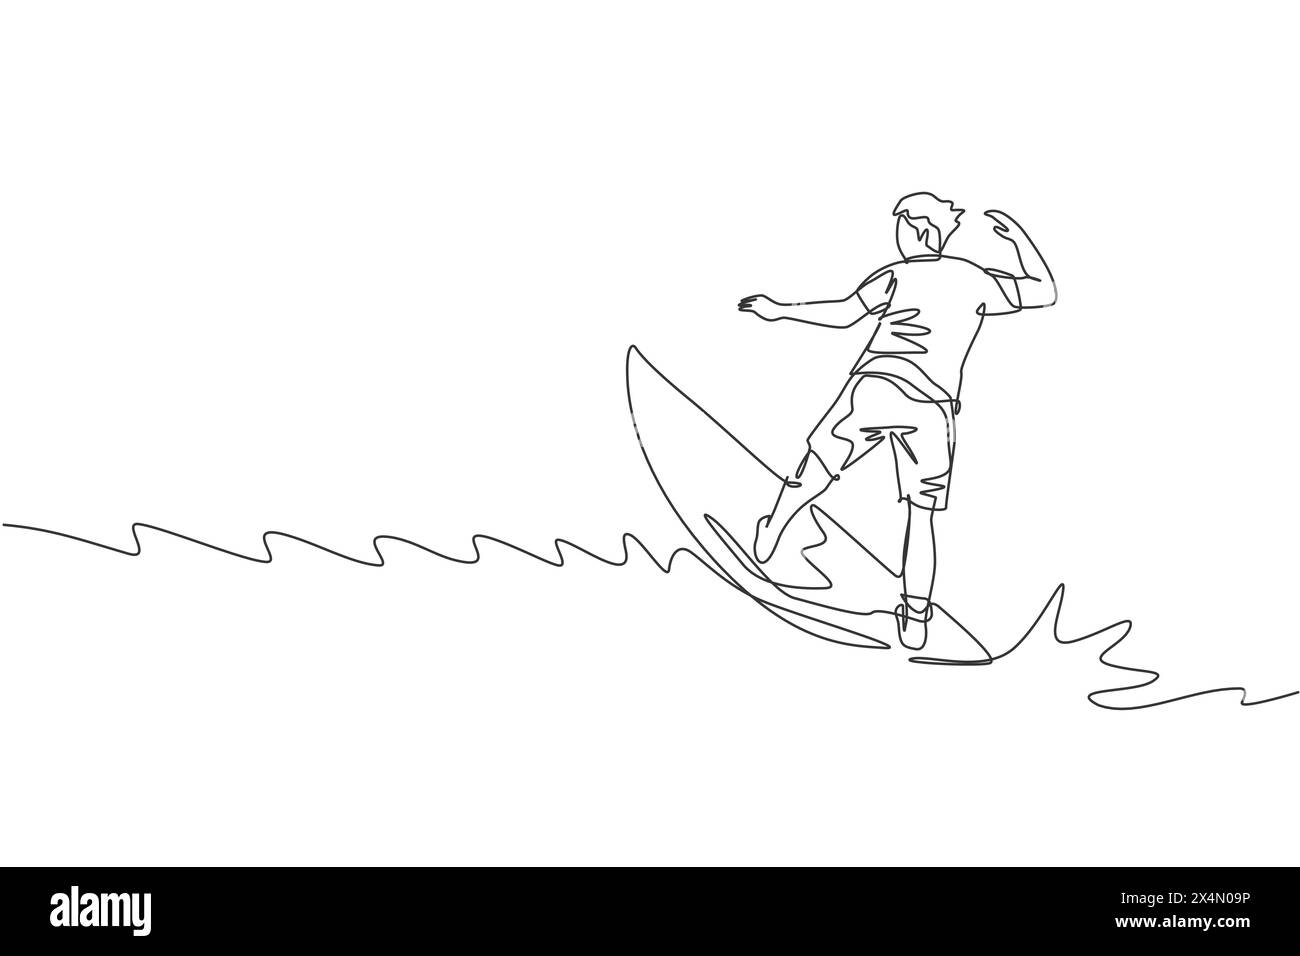 Un dessin simple ligne de jeune homme surfeur sportif chevauchant sur de grandes vagues dans l'illustration graphique vectorielle de surf de plage paradisiaque. Vie de sports nautiques extrêmes Illustration de Vecteur